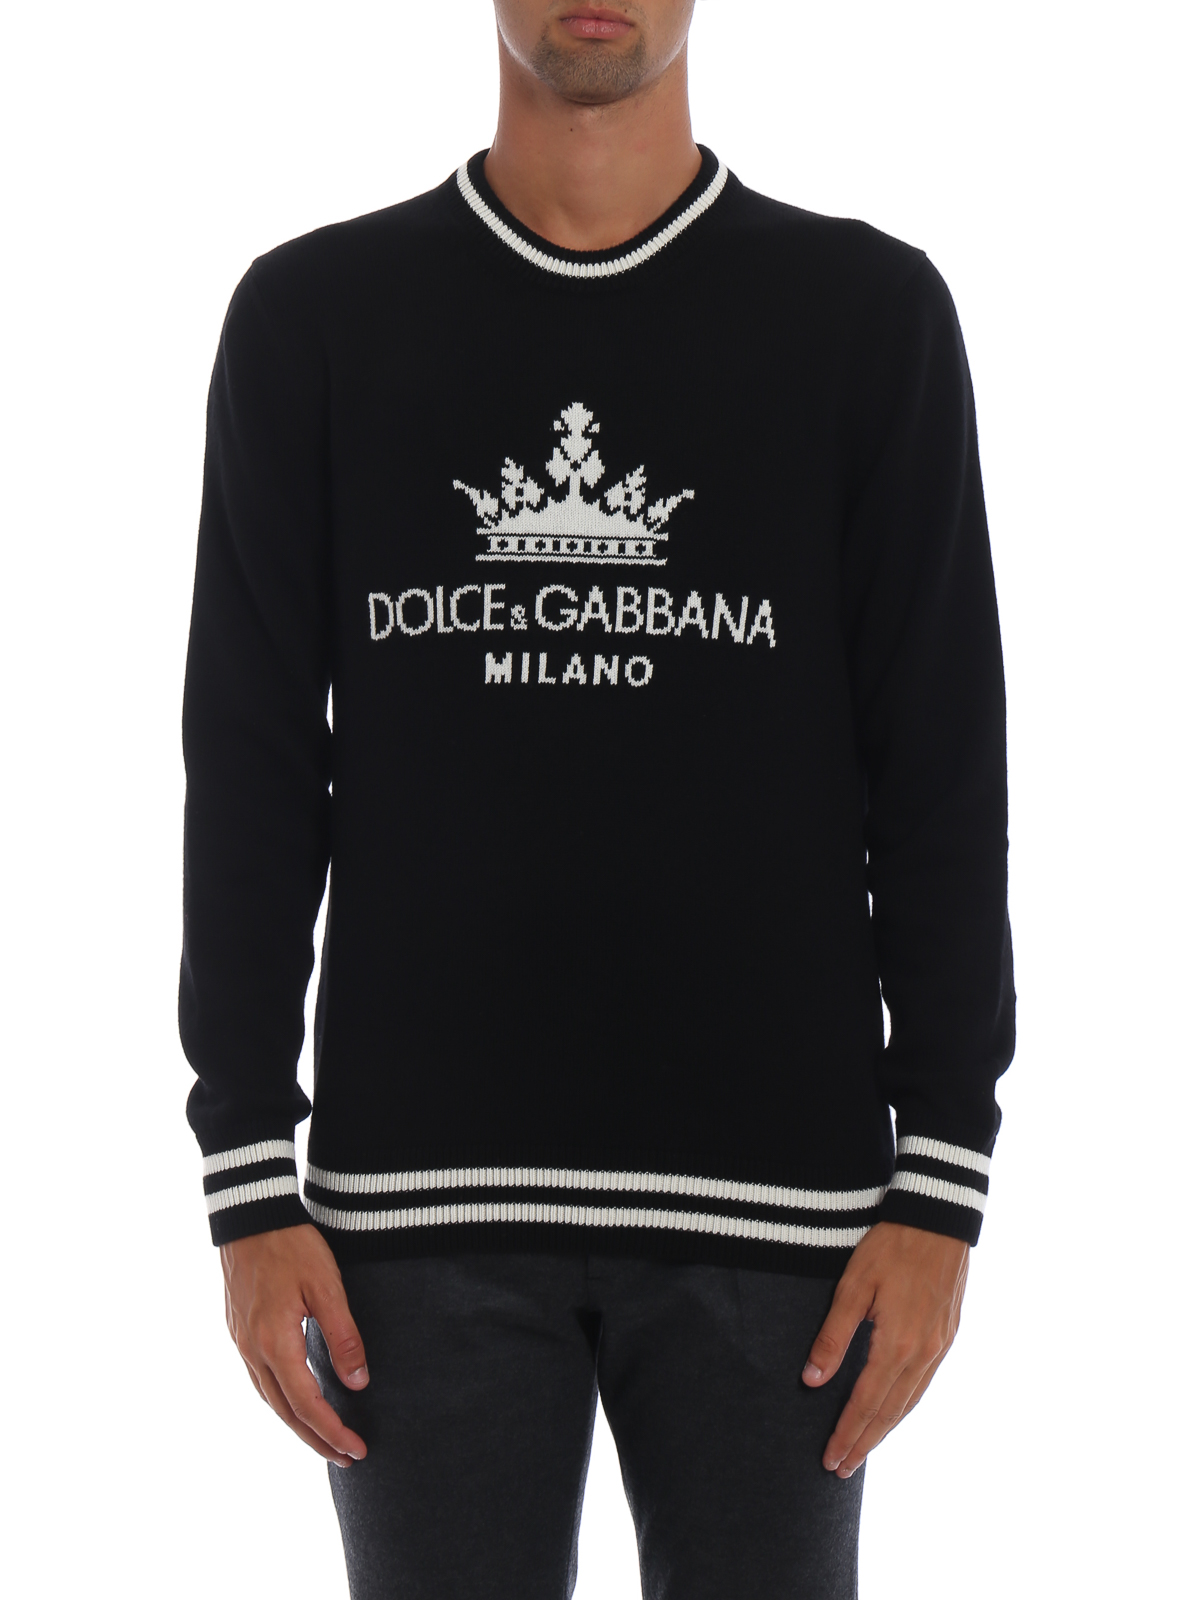 dolce gabbana cashmere sweater